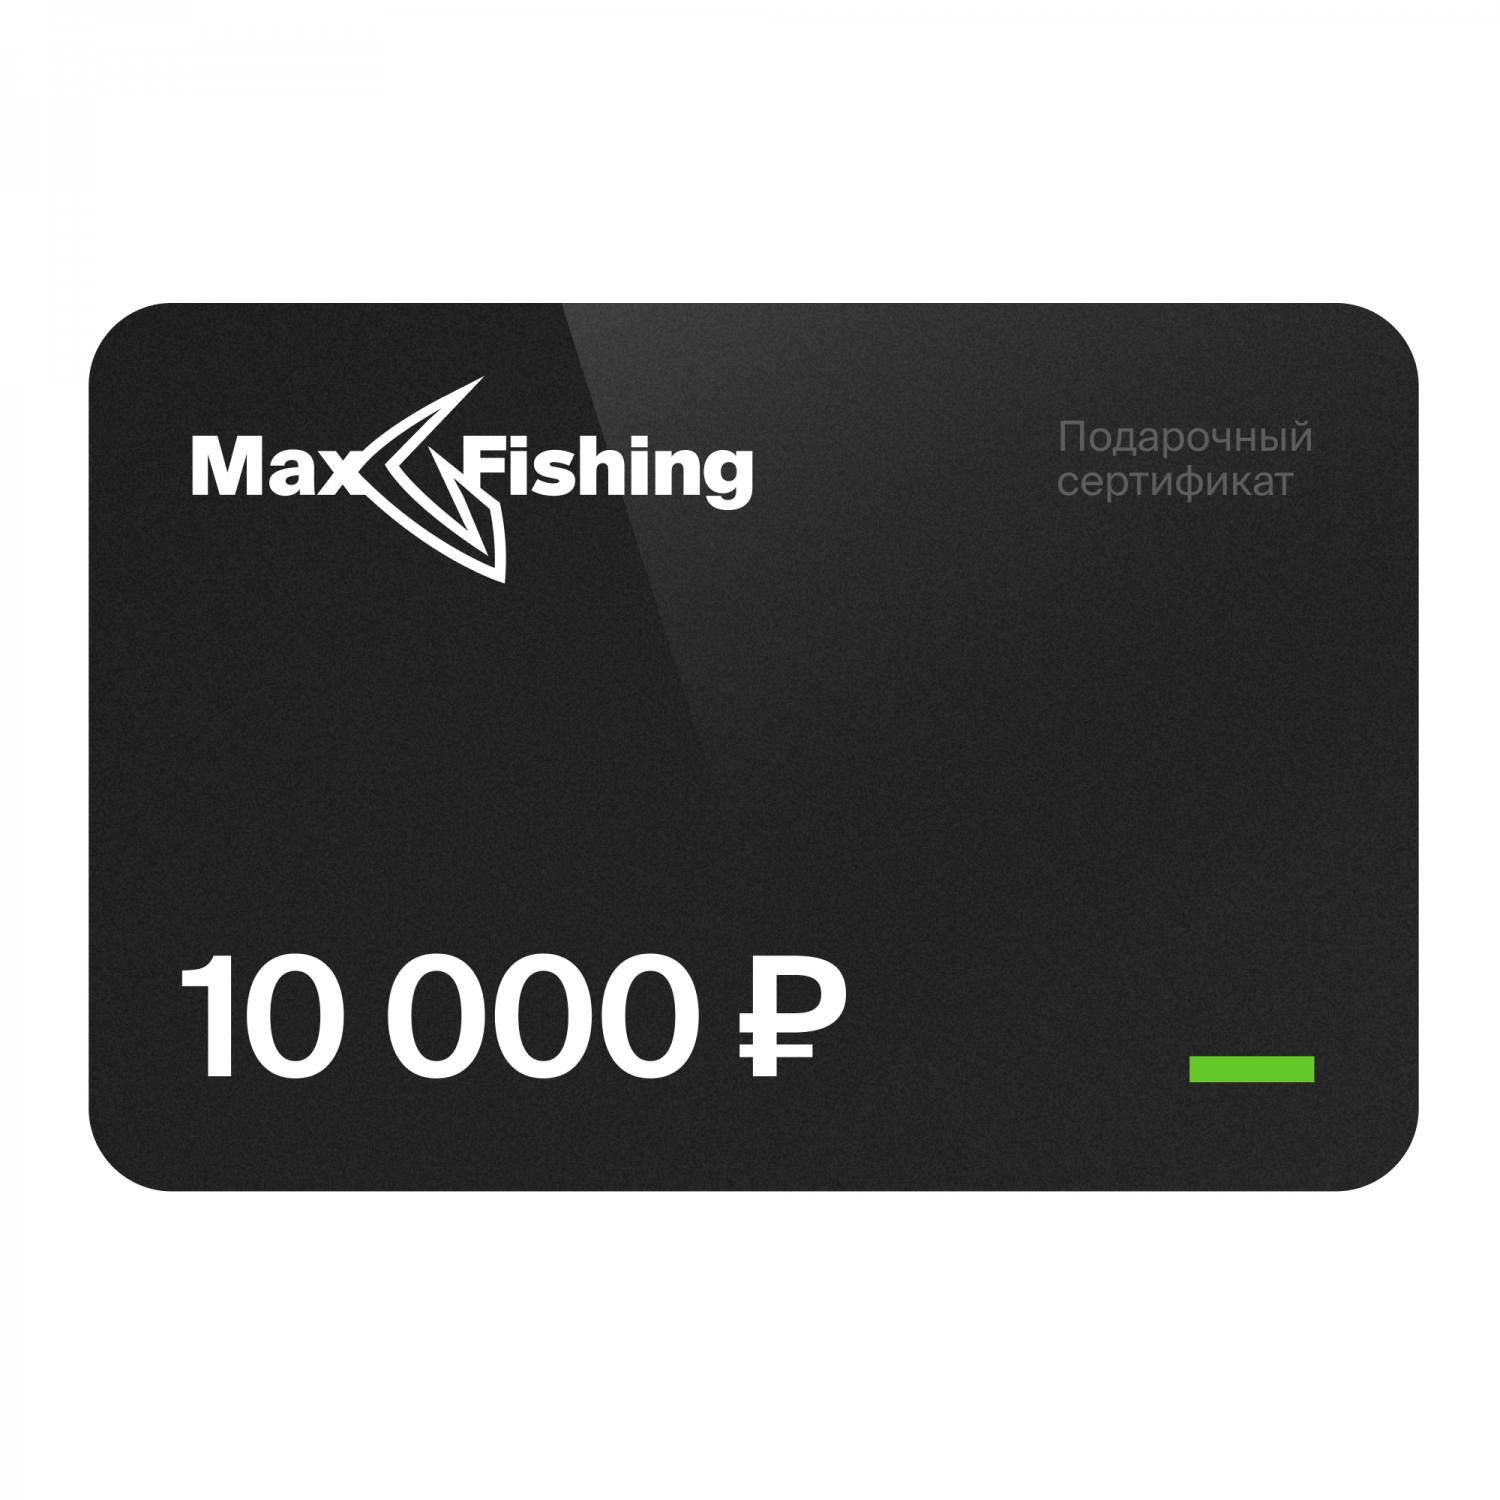 Подарочный сертификат MaxFishing 10 000 ₽ виртуальный подарочный сертификат 5 000